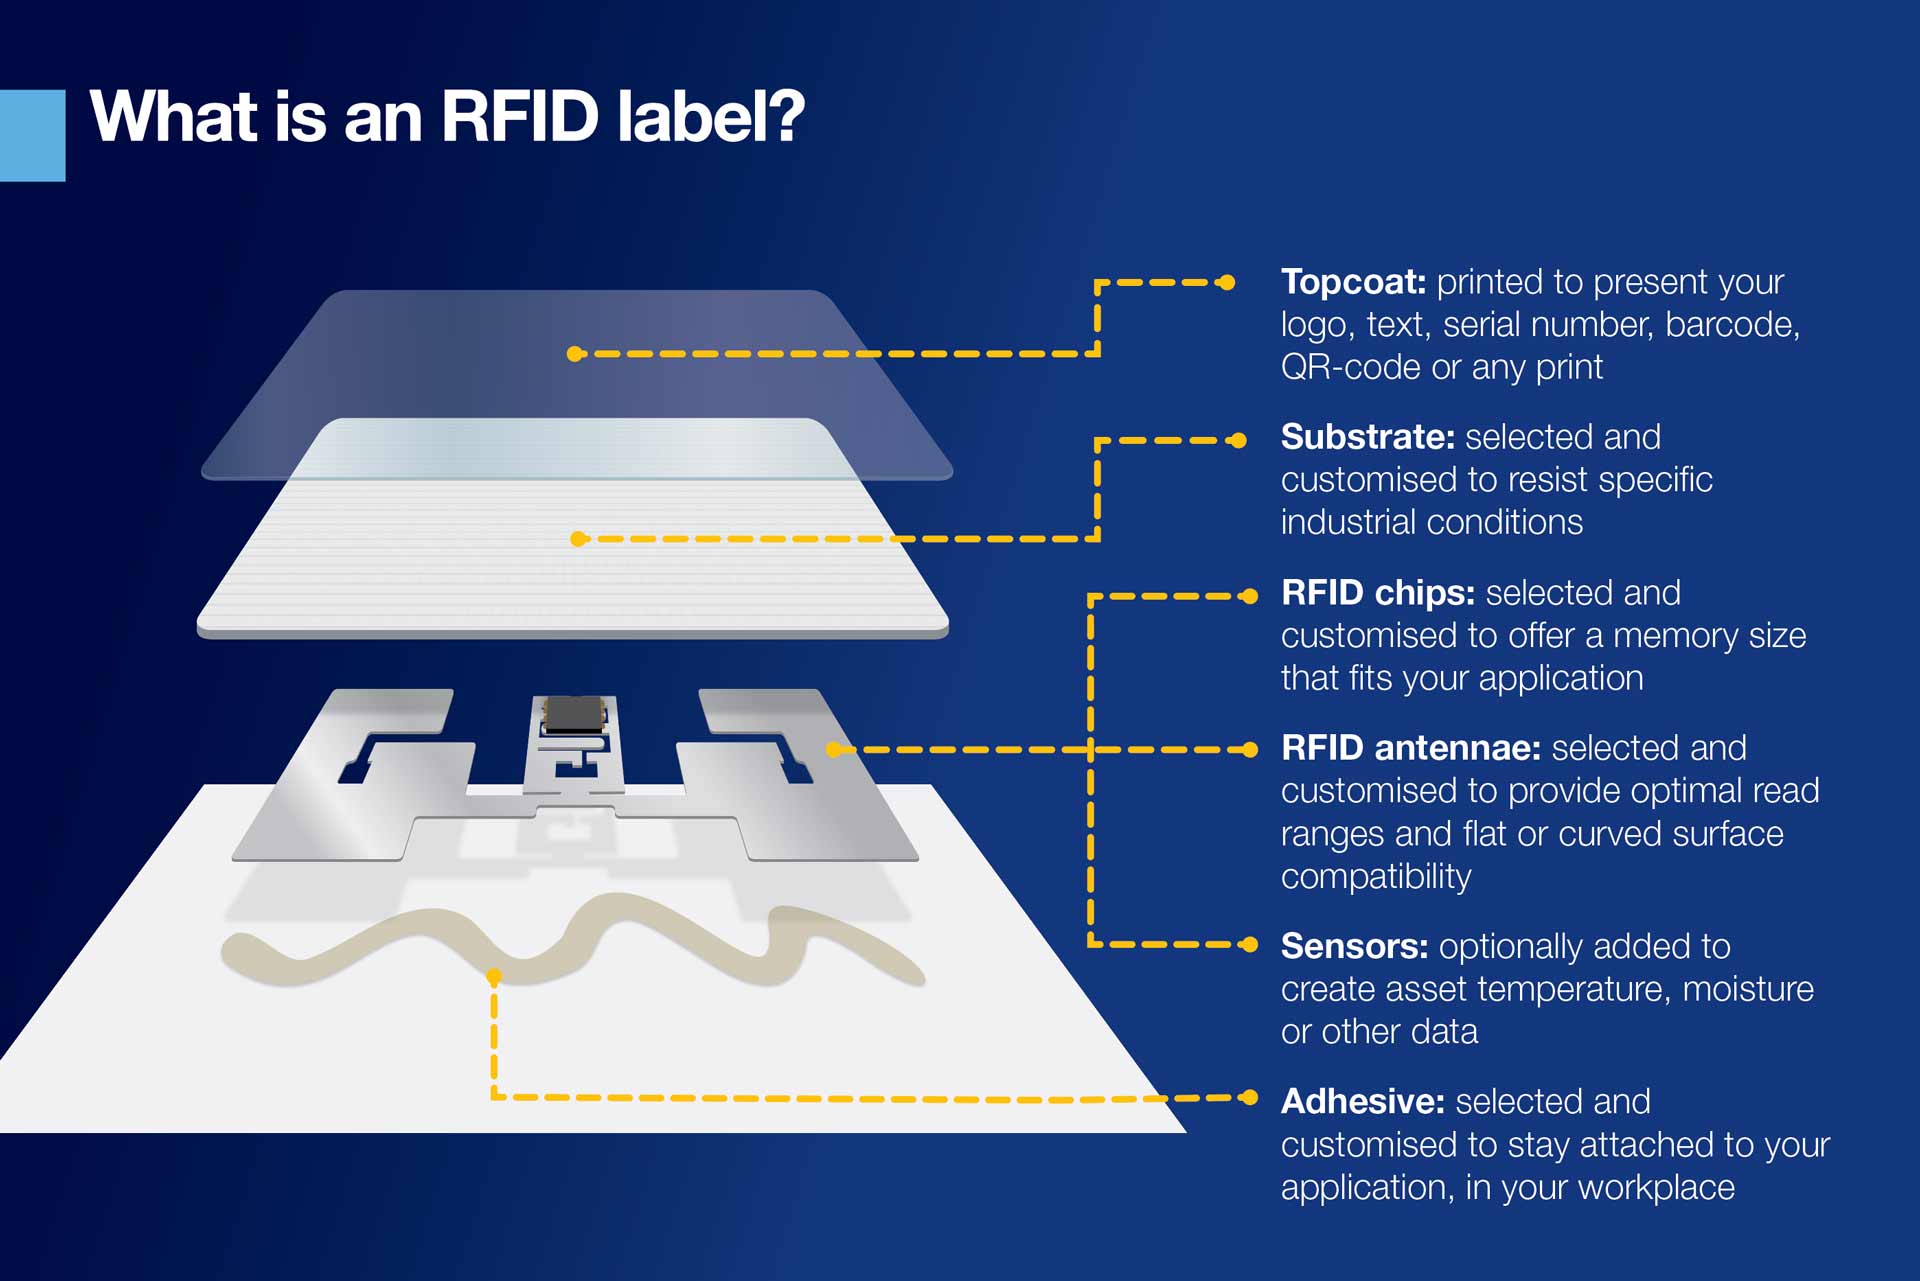 Infographie expliquant ce qu’est une étiquette RFID. Son contenu est également couvert dans l’article de blog principal.